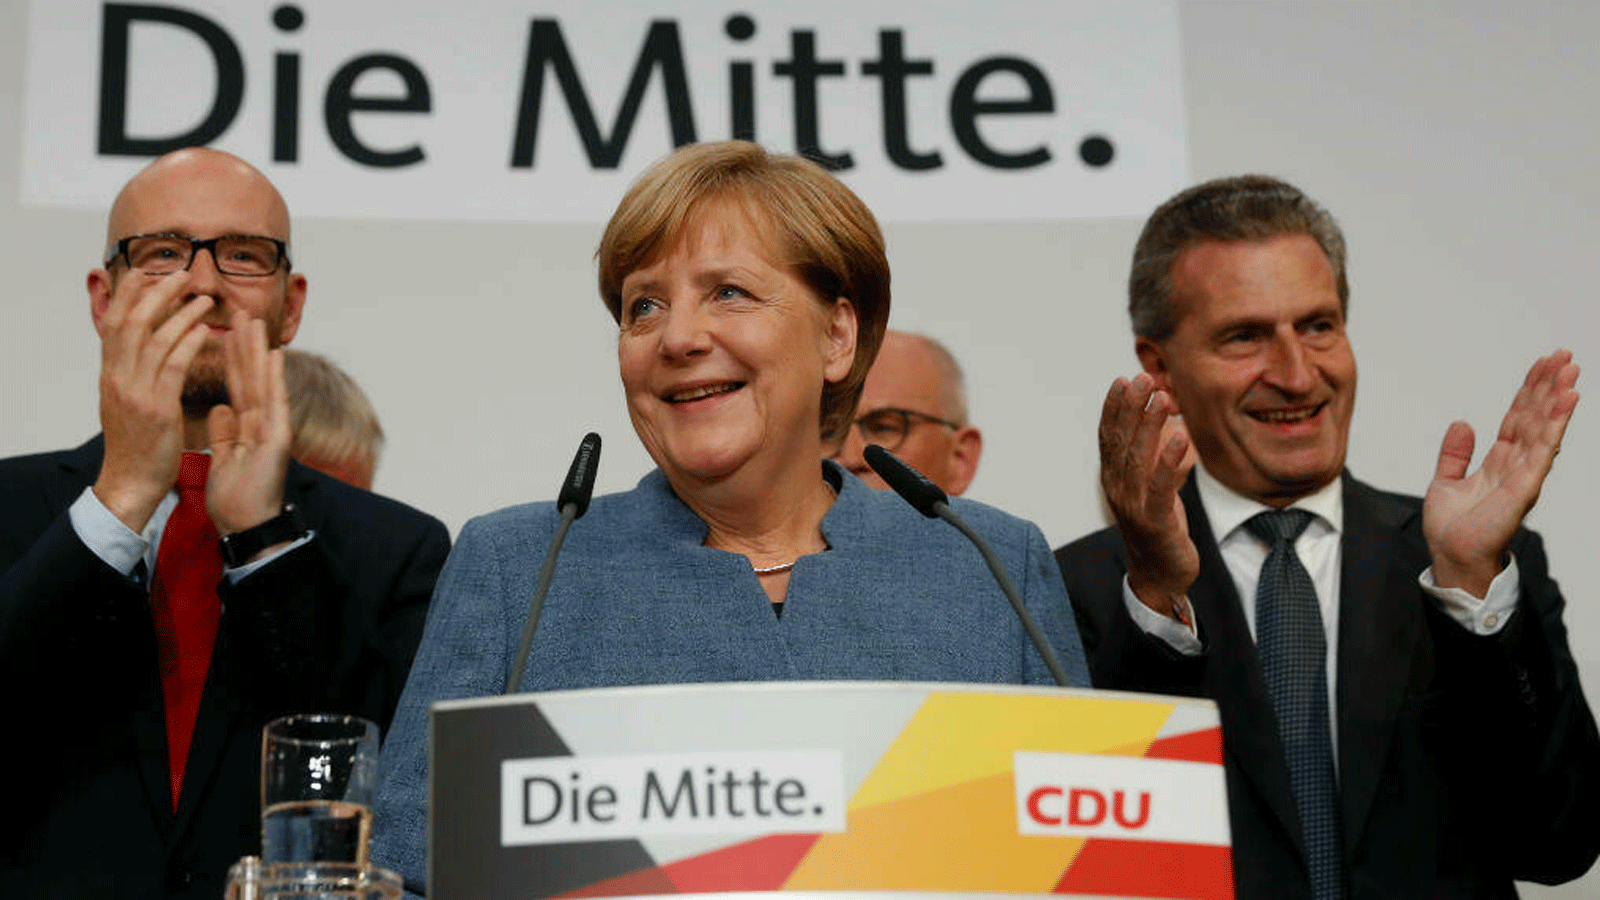 المستشارة الألمانية وزعيمة حزب الاتحاد الديمقراطي المسيحي، أنجيلا ميركل، تخاطب أنصارها بعد بث نتائج استطلاعات الرأي على شاشة التلفزيون العام في مقر الحزب في برلين في 24 أيلول/ سبتمبر 2017